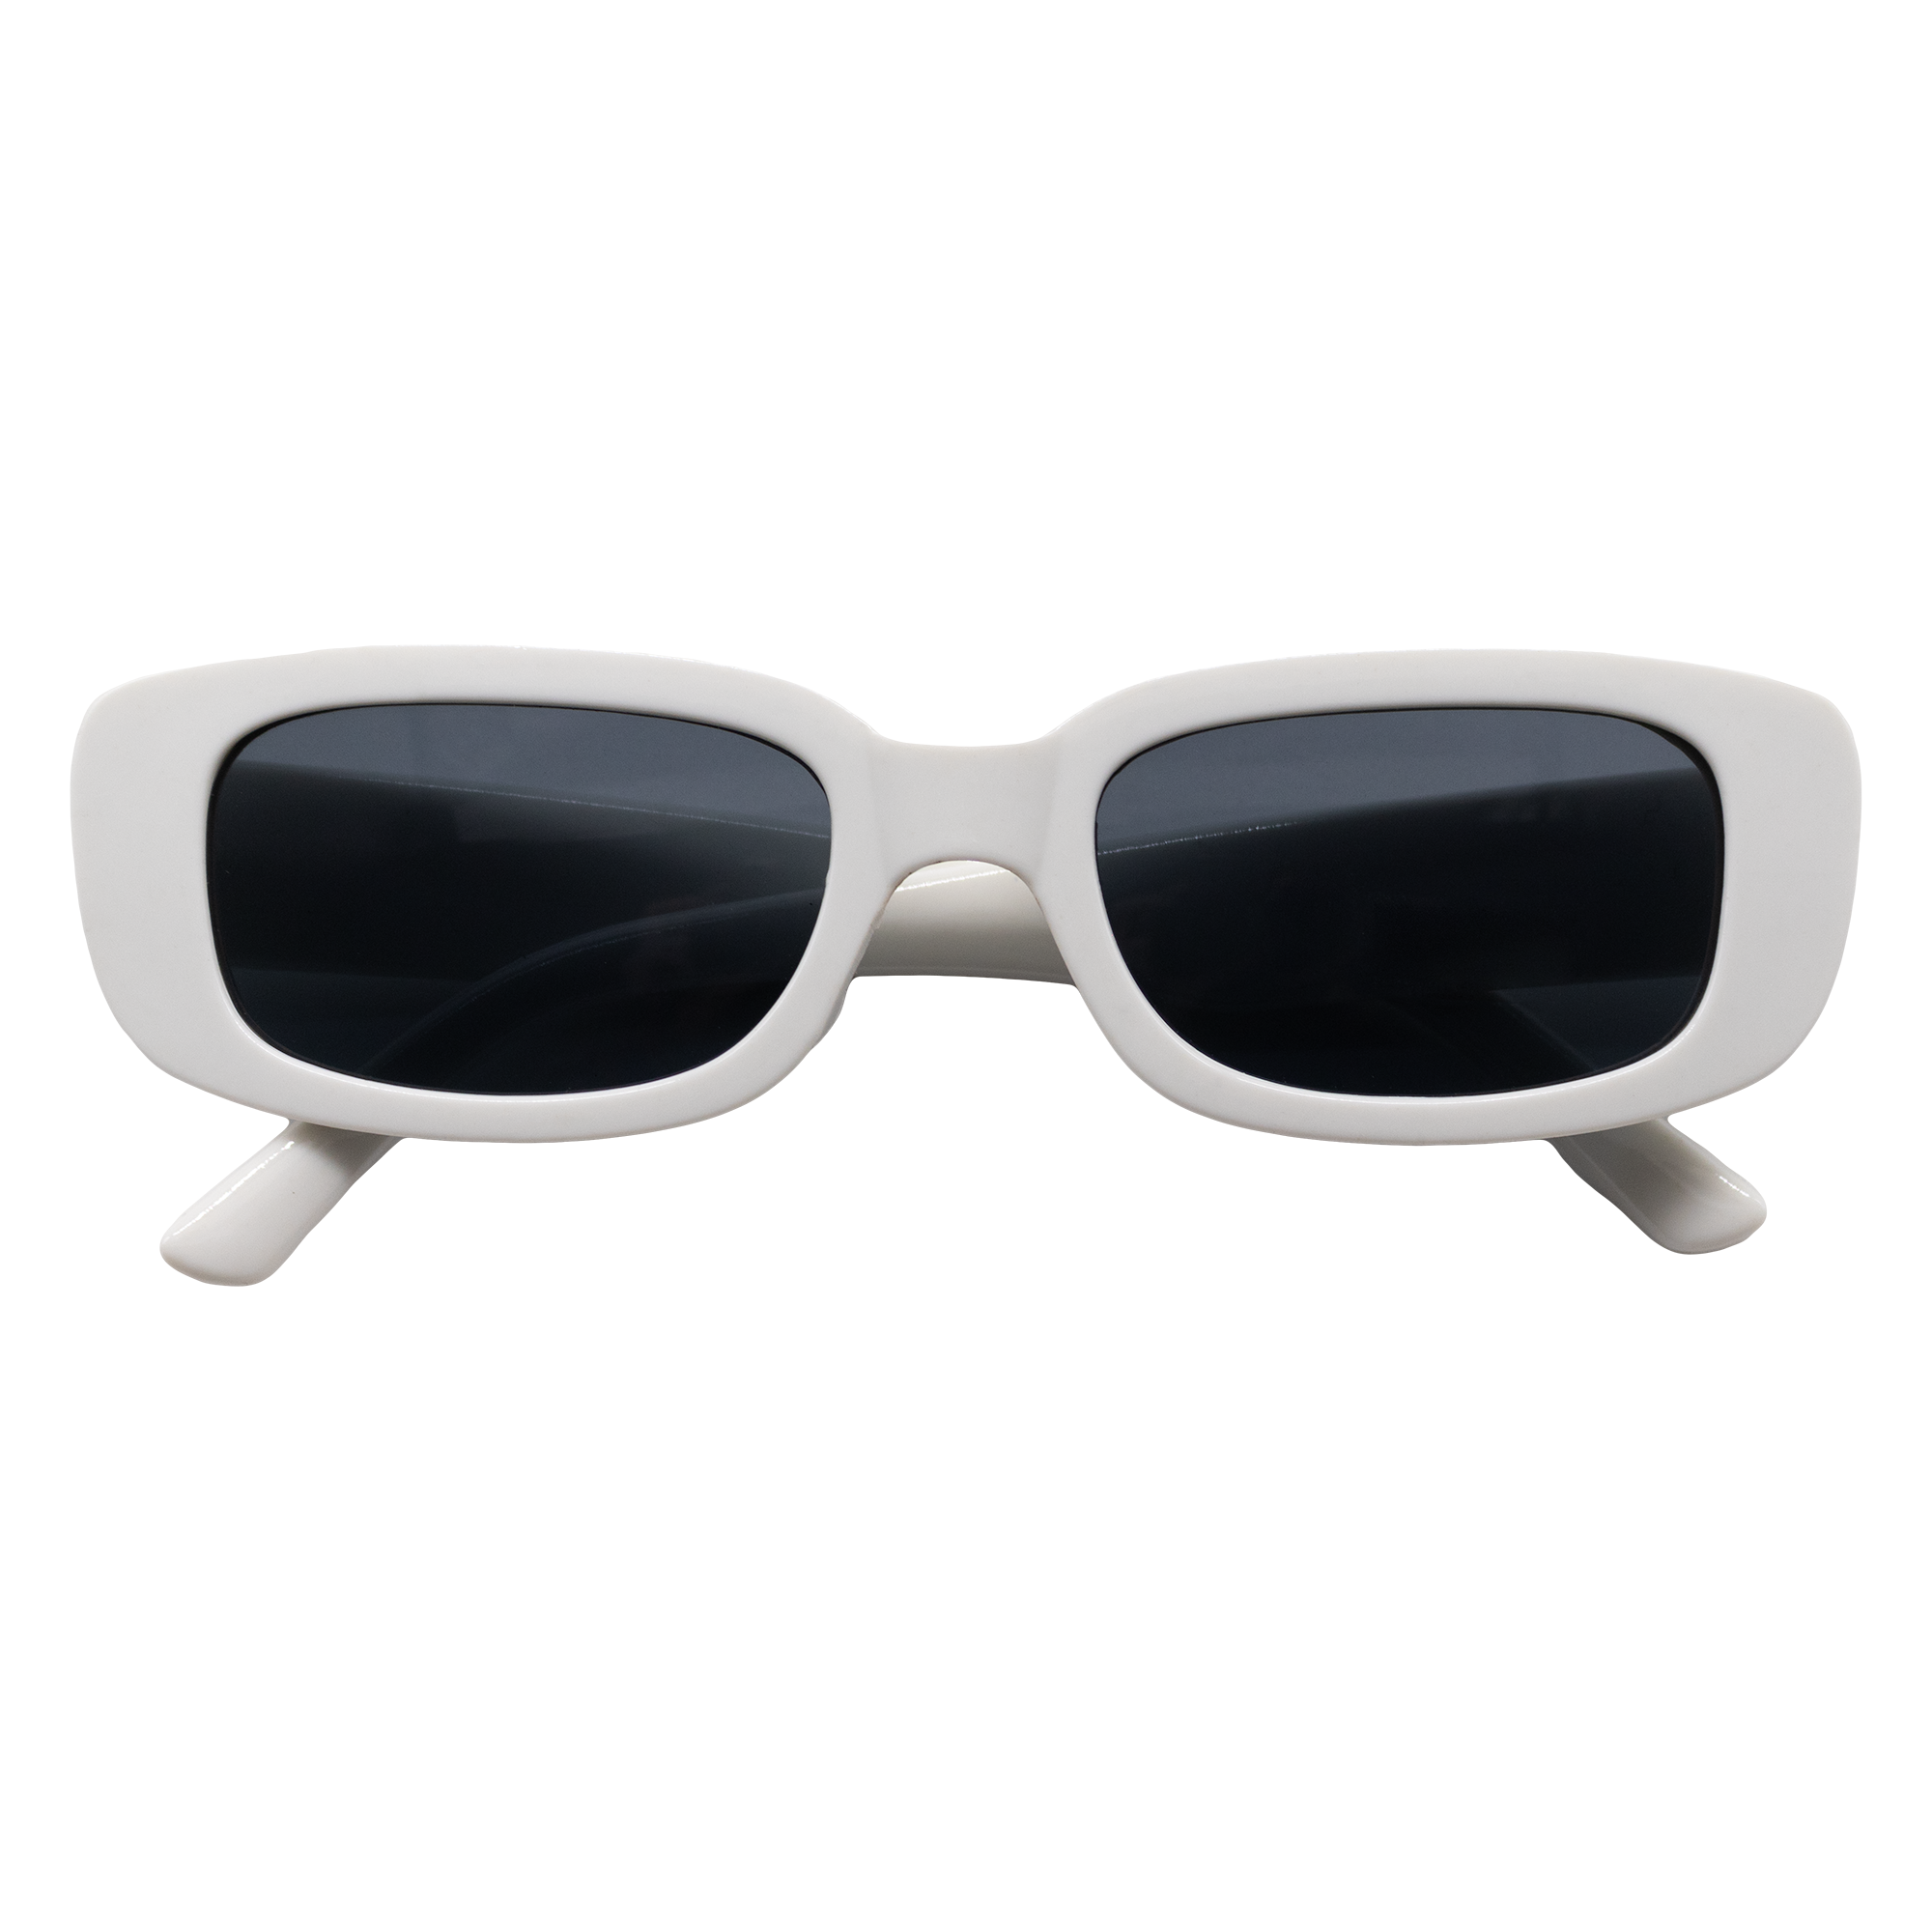 Spark Sunglasses - Rectangle Frame White